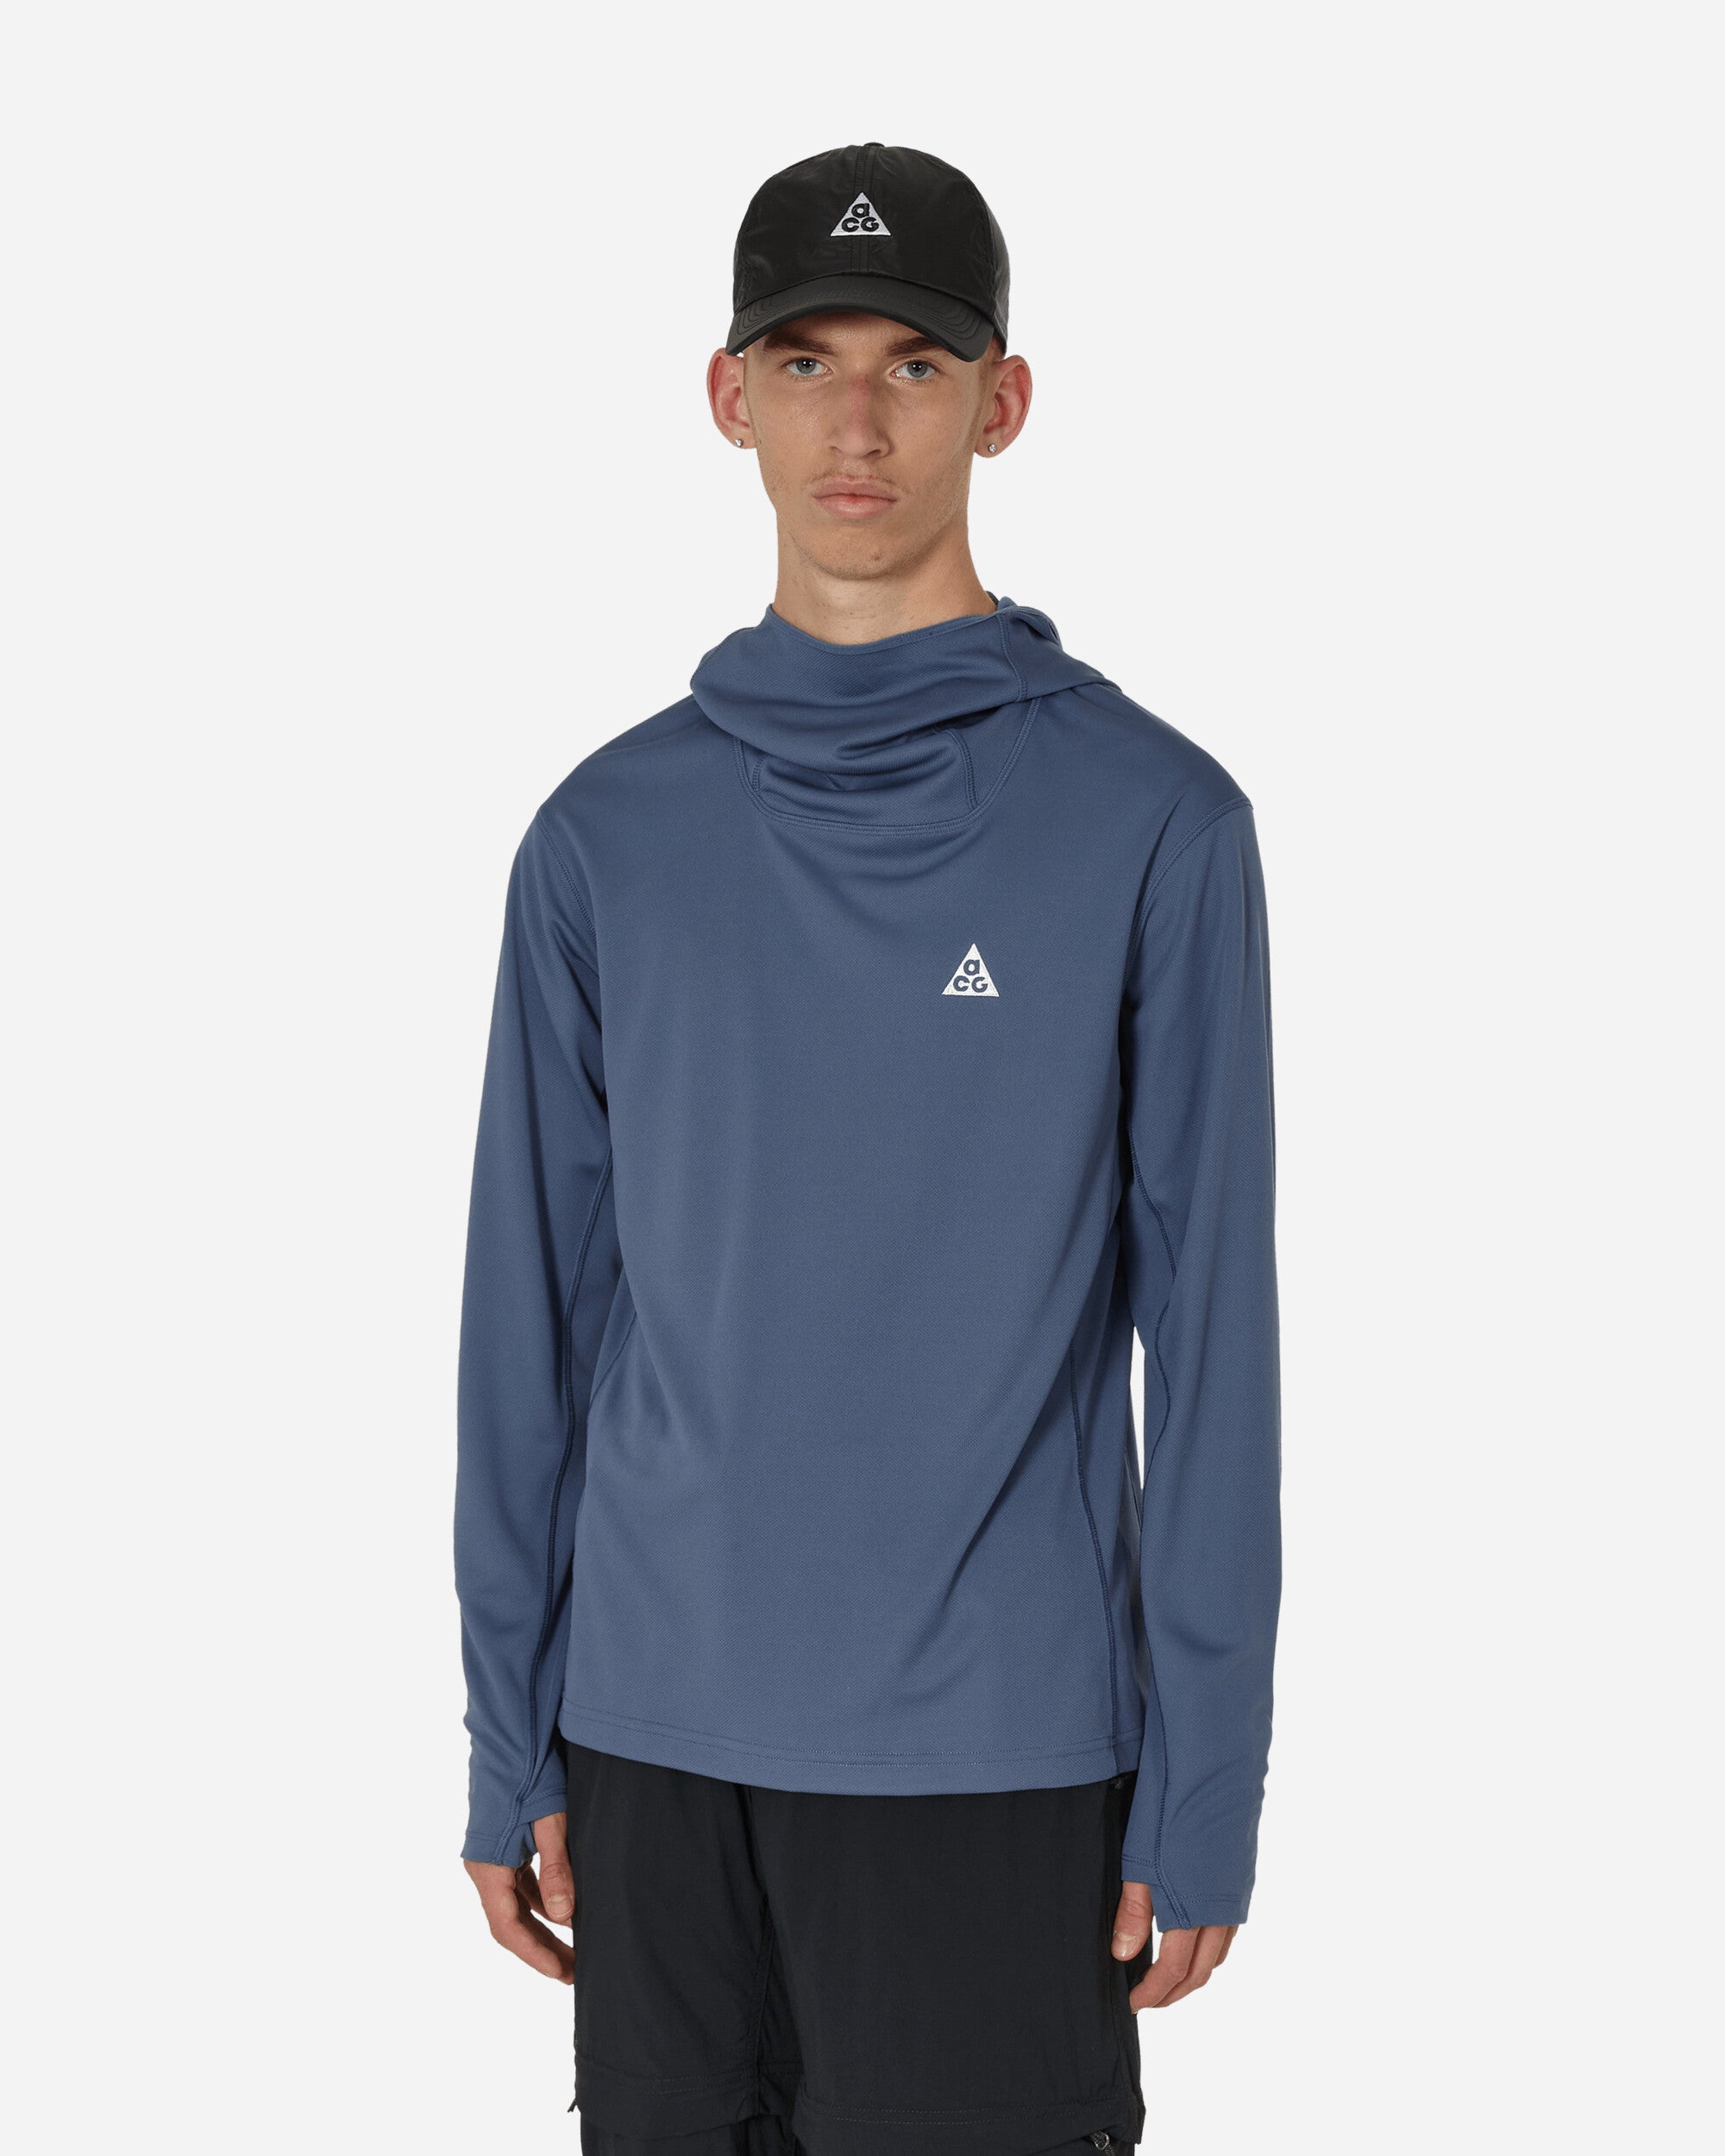 Nike Acg Dfadv Lava Tree Uv Hdy Diffused Blue/Summit White Sweatshirts Hoodies DX6967-491